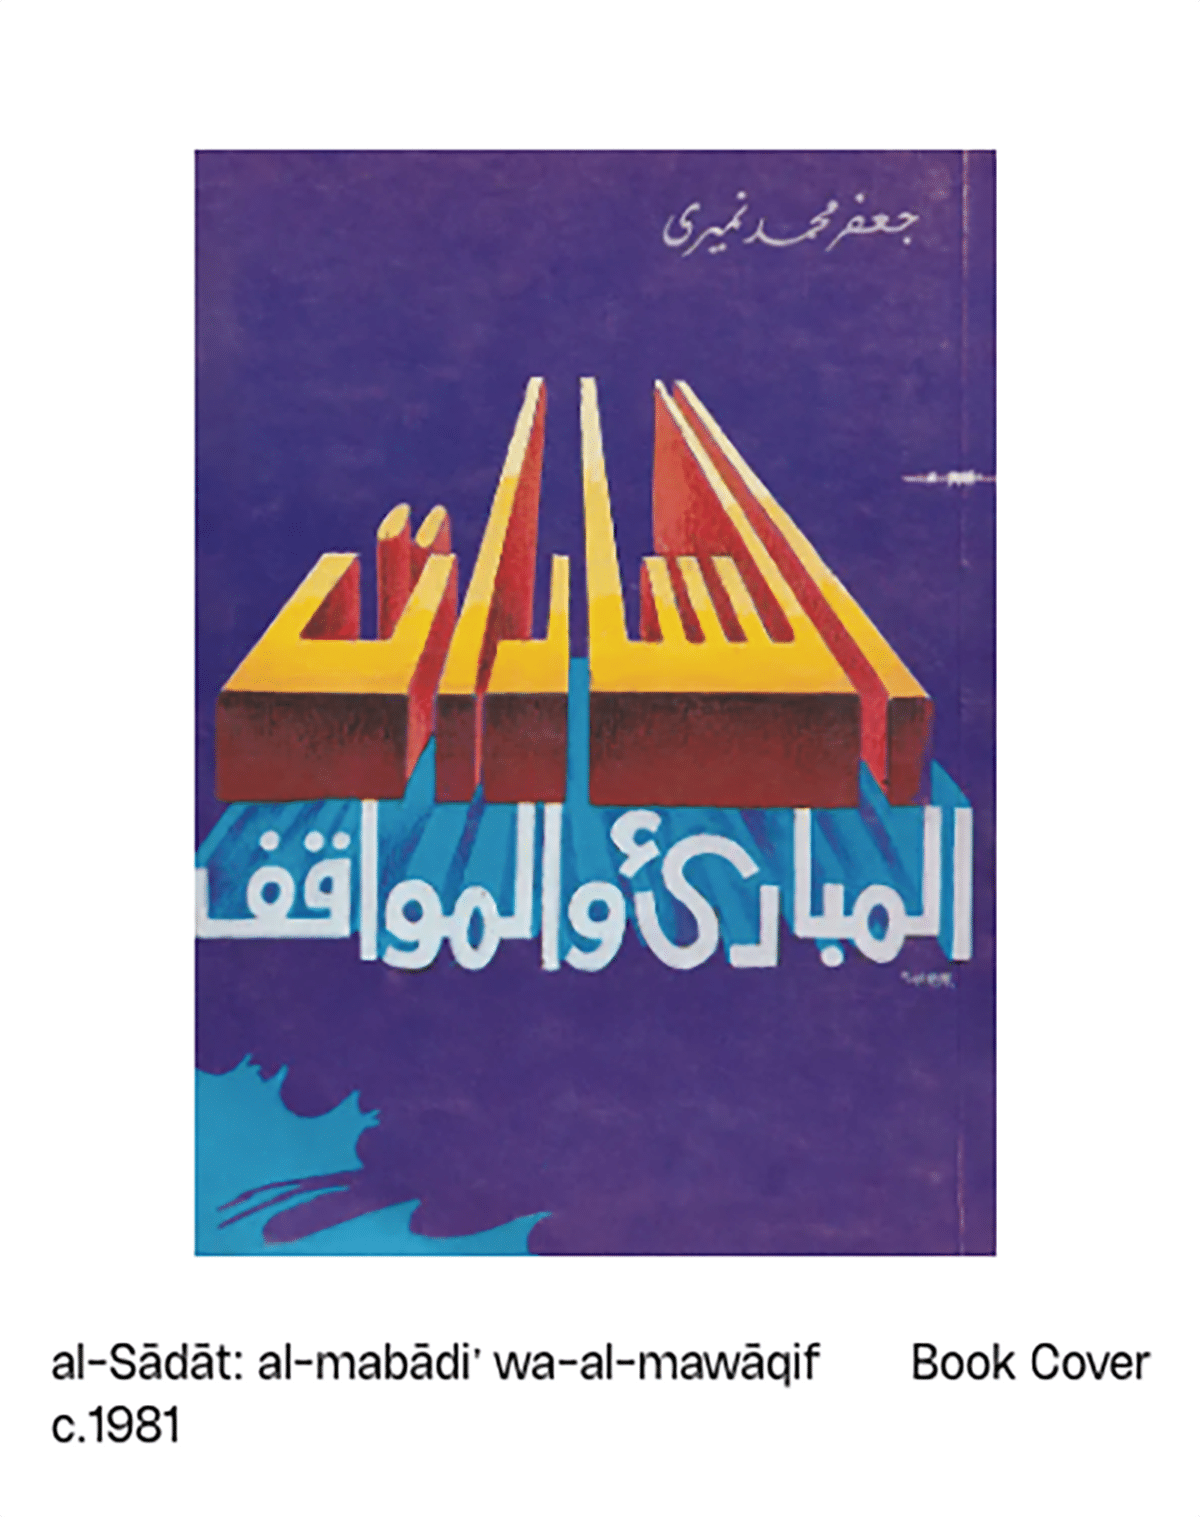 Ein Buchcover mit sci-fi ähnlicher arabischer Schrift auf violettem Grund